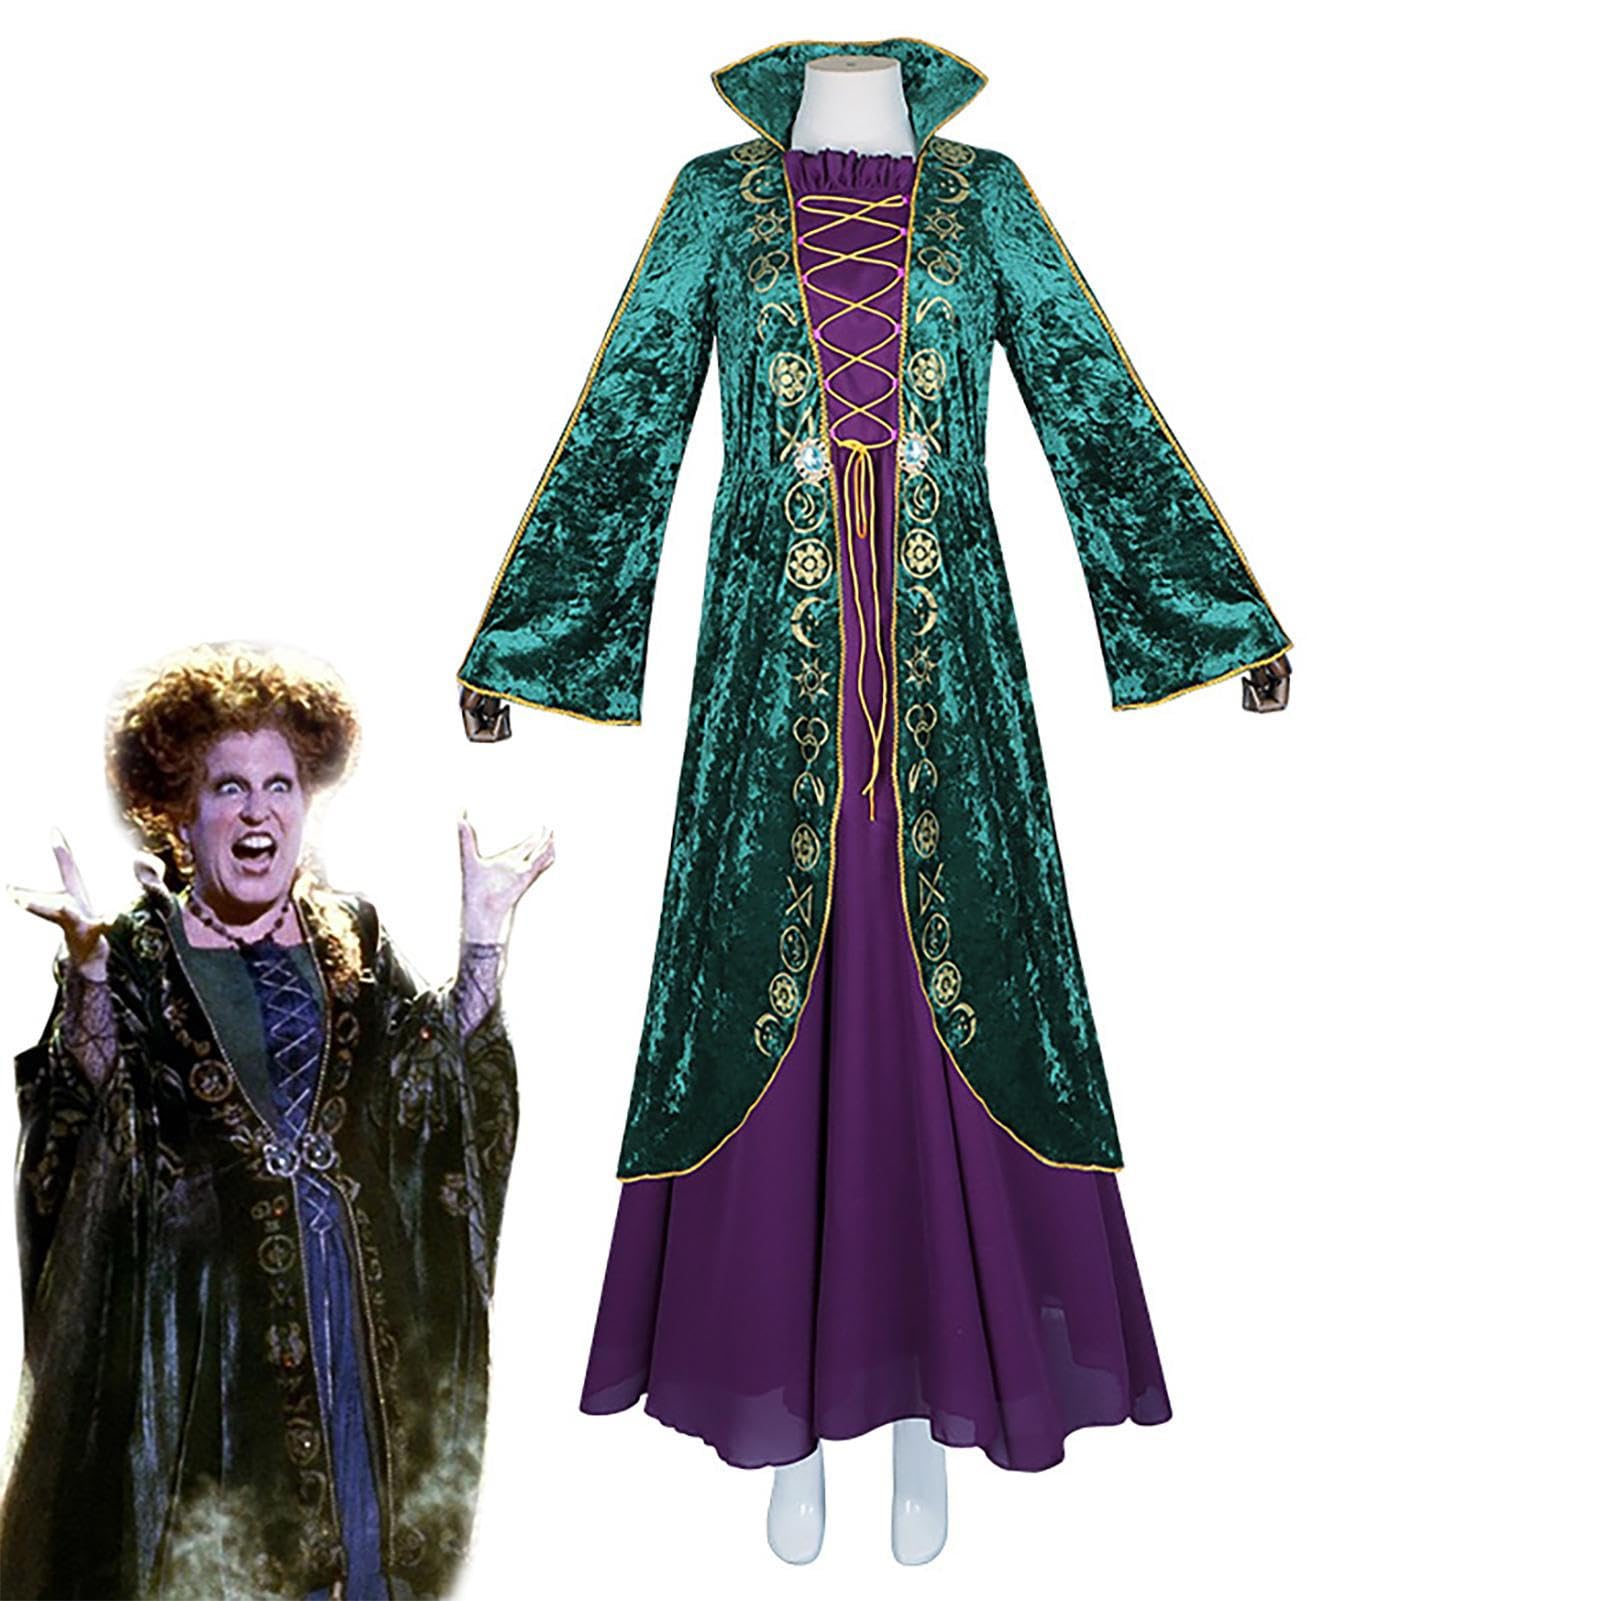 Halloween Cosplay Winifred Sanderson Cospaly Kostüm, Frauen Mittelalterliche Hexe Cosplay Kostü Kleid Grüne Hexe Robe Kleid Halloween Karneval Kostü e